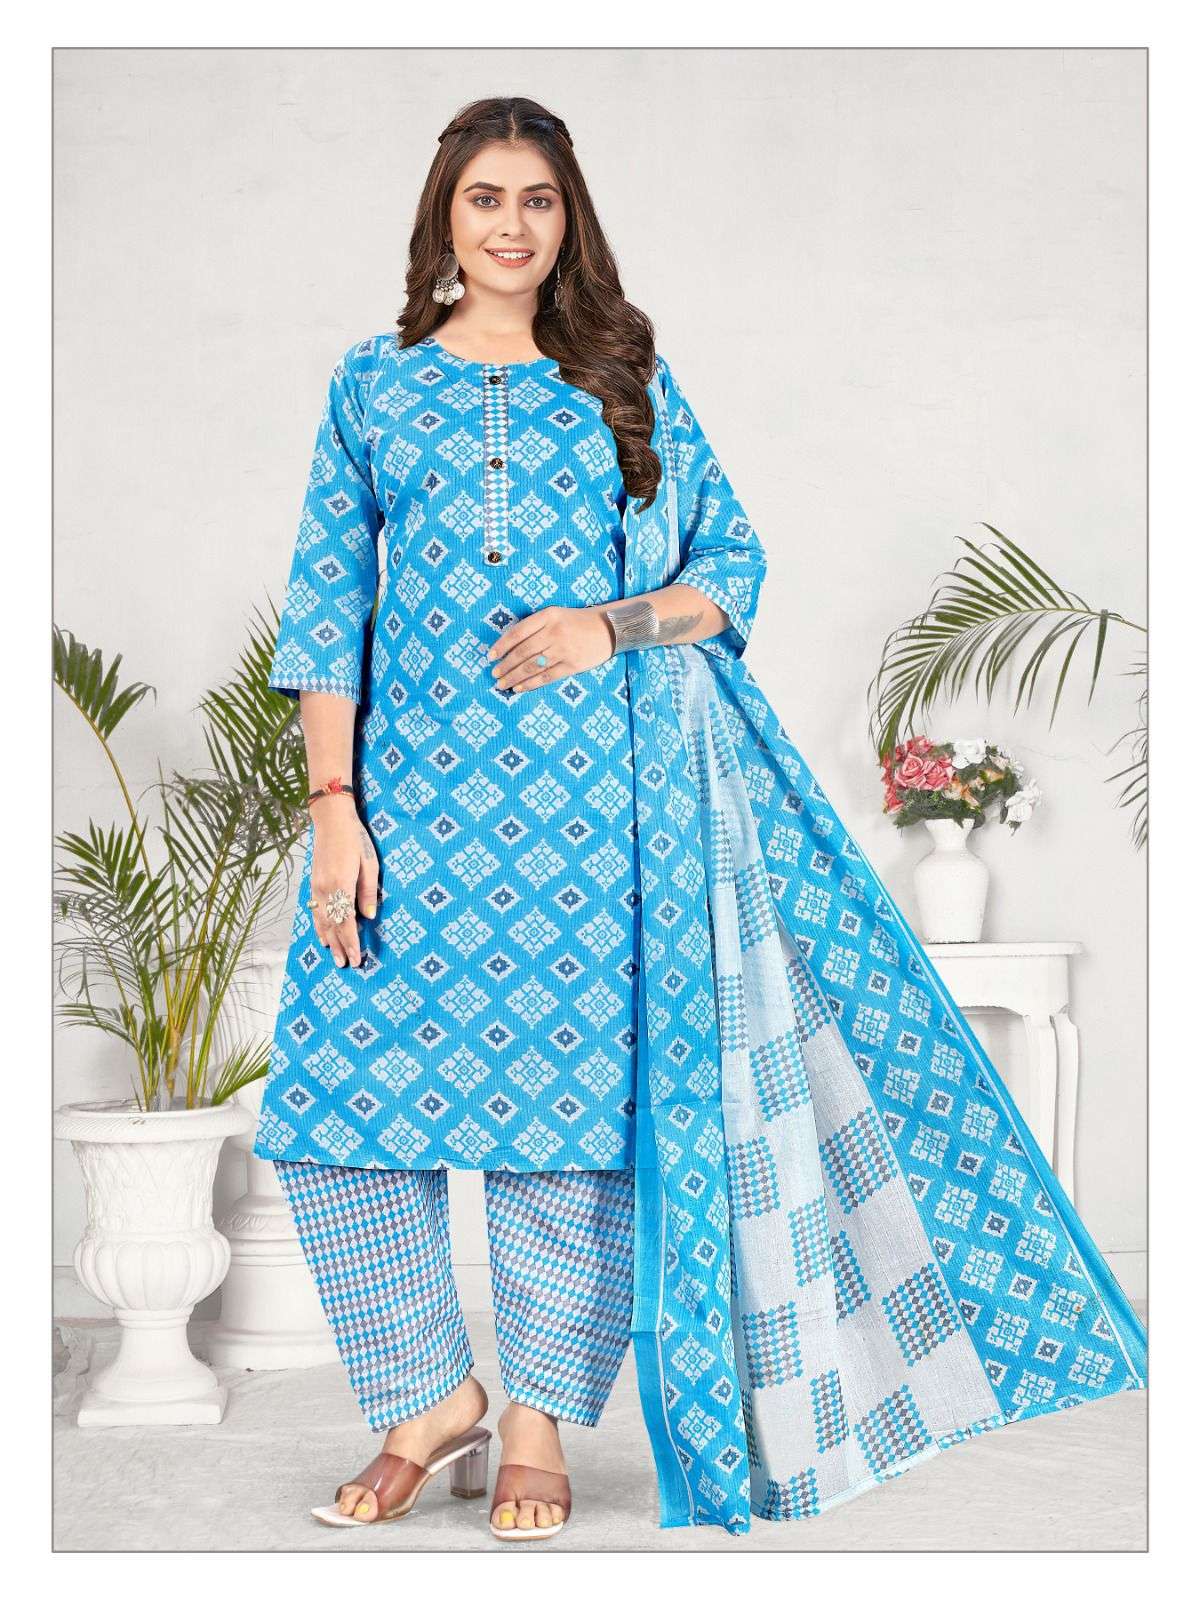 Casual Wear printed Nafisa Soni Kudi 5 Ready Made Patiyala Dress Collection  at Rs 370/piece in Surat